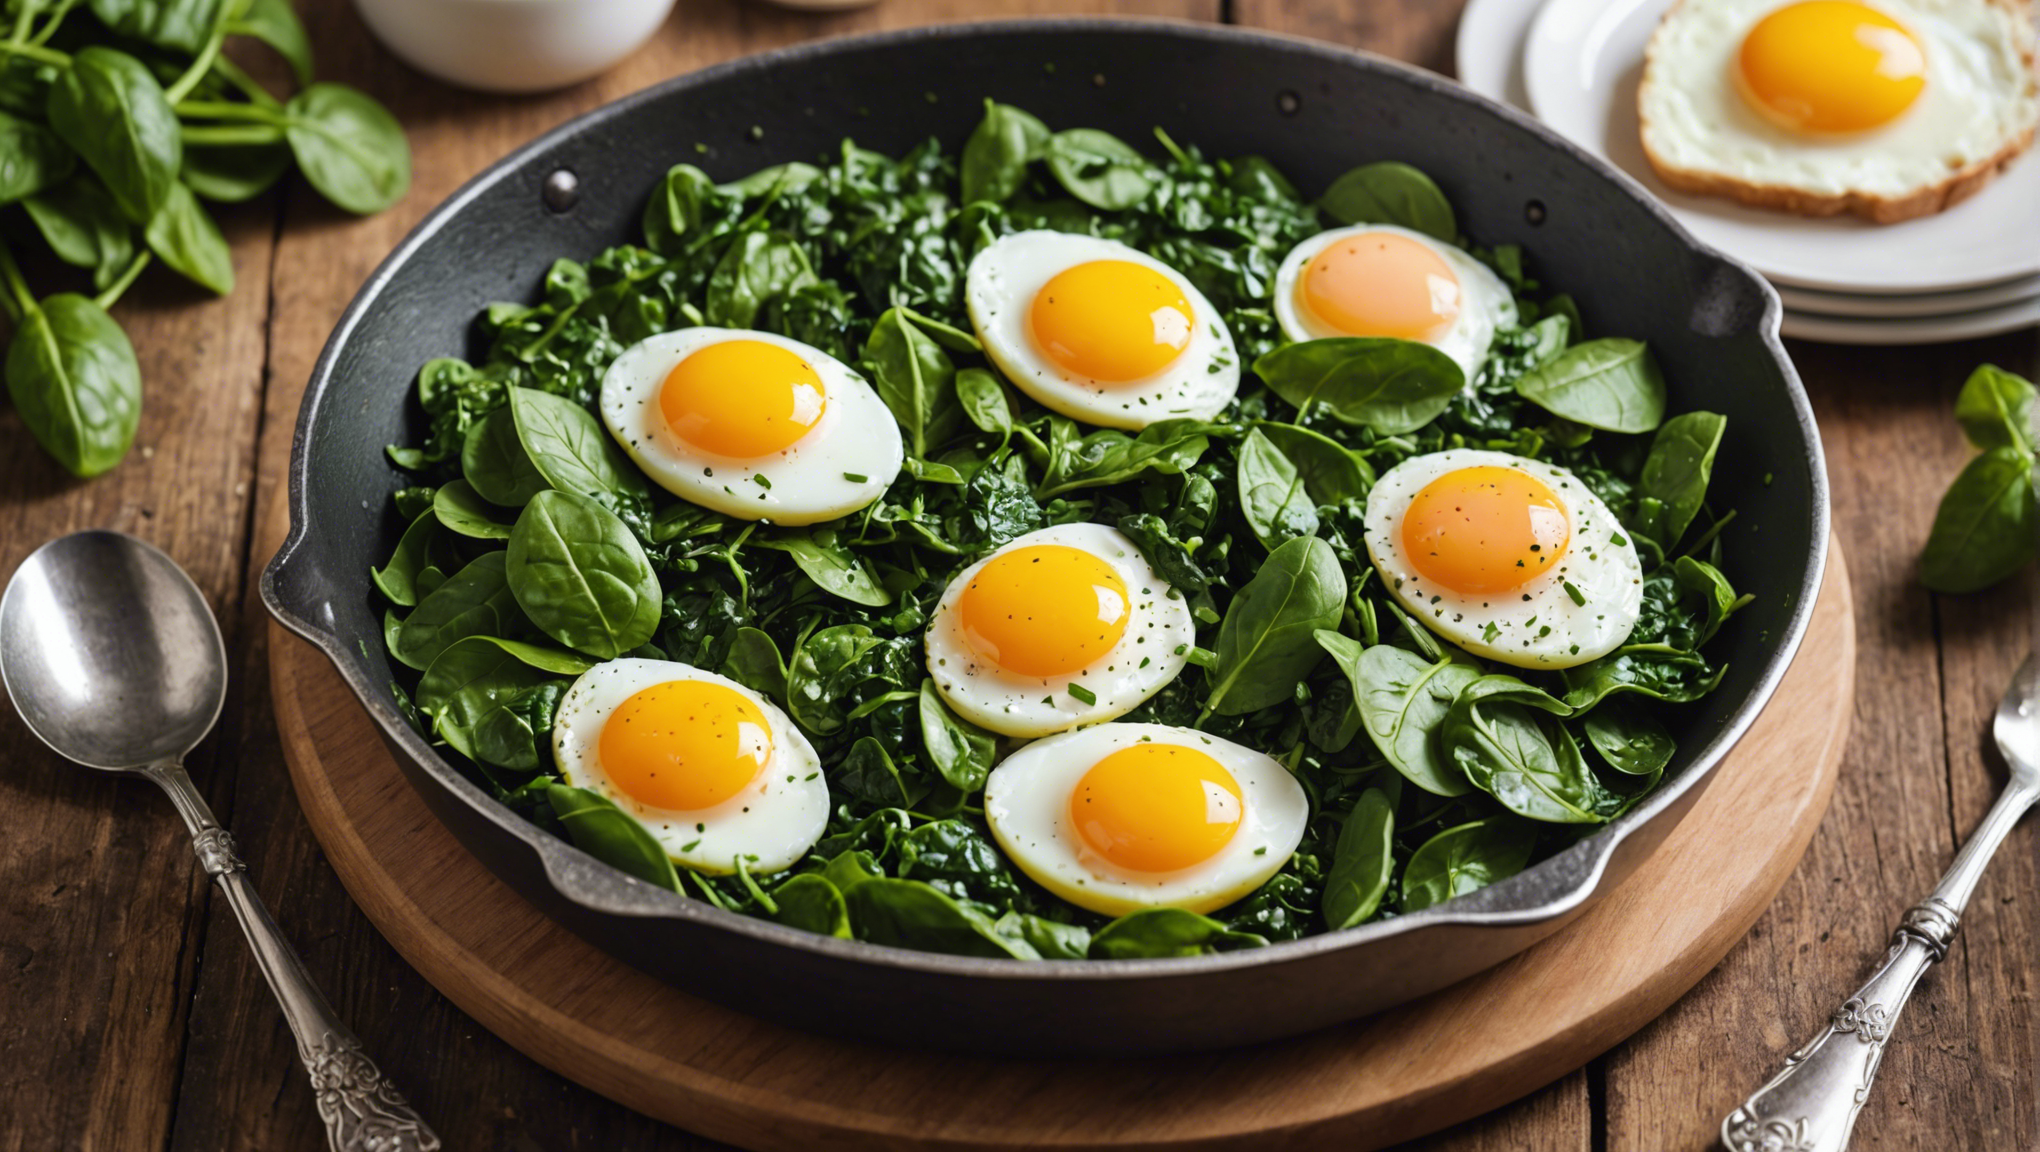 découvrez comment préparer une délicieuse recette d'épinards aux œufs avec nos conseils et astuces faciles à suivre. savourez ce plat sain et savoureux en un rien de temps !